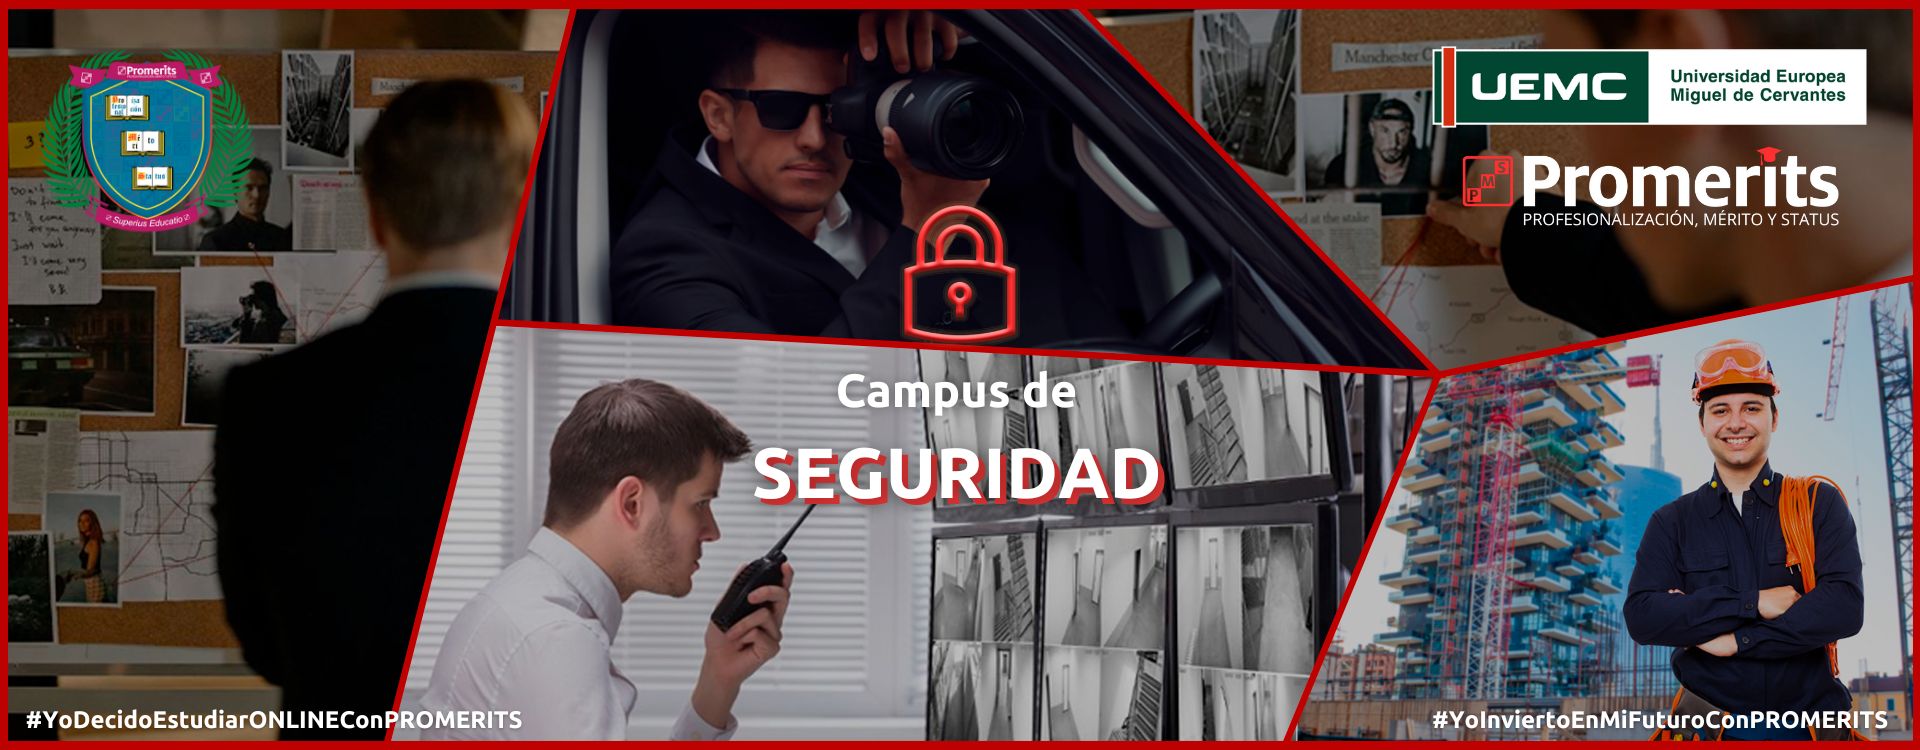 Campus Seguridad de PROMERITS